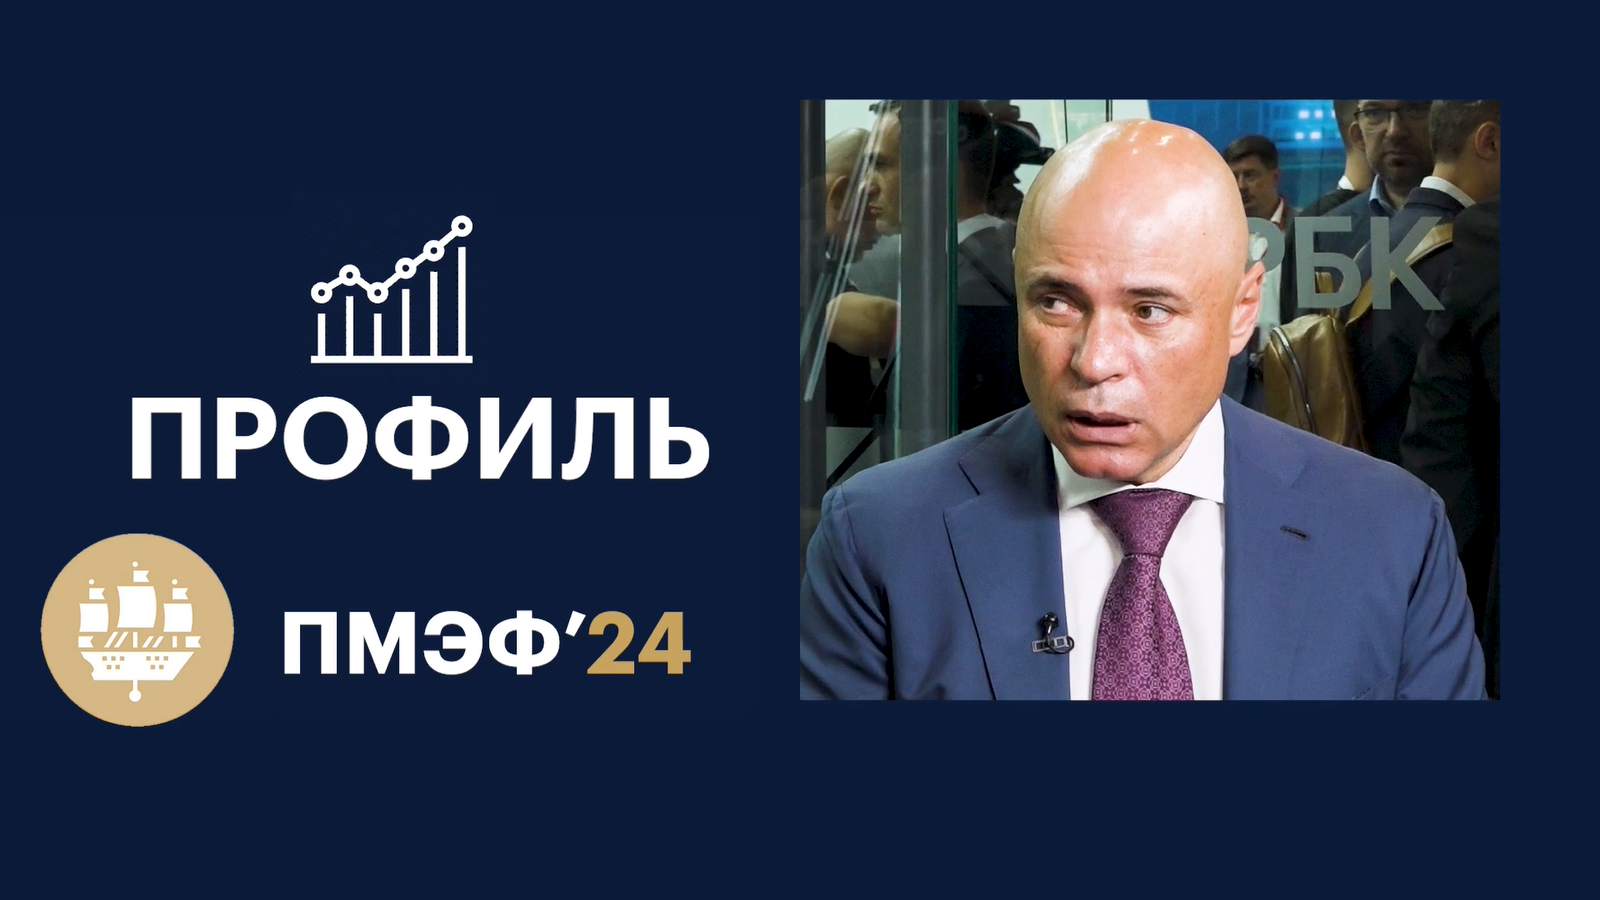 Губернатор Игорь Артамонов — о планах установить рекорд суммы соглашений на ПМЭФ-2024